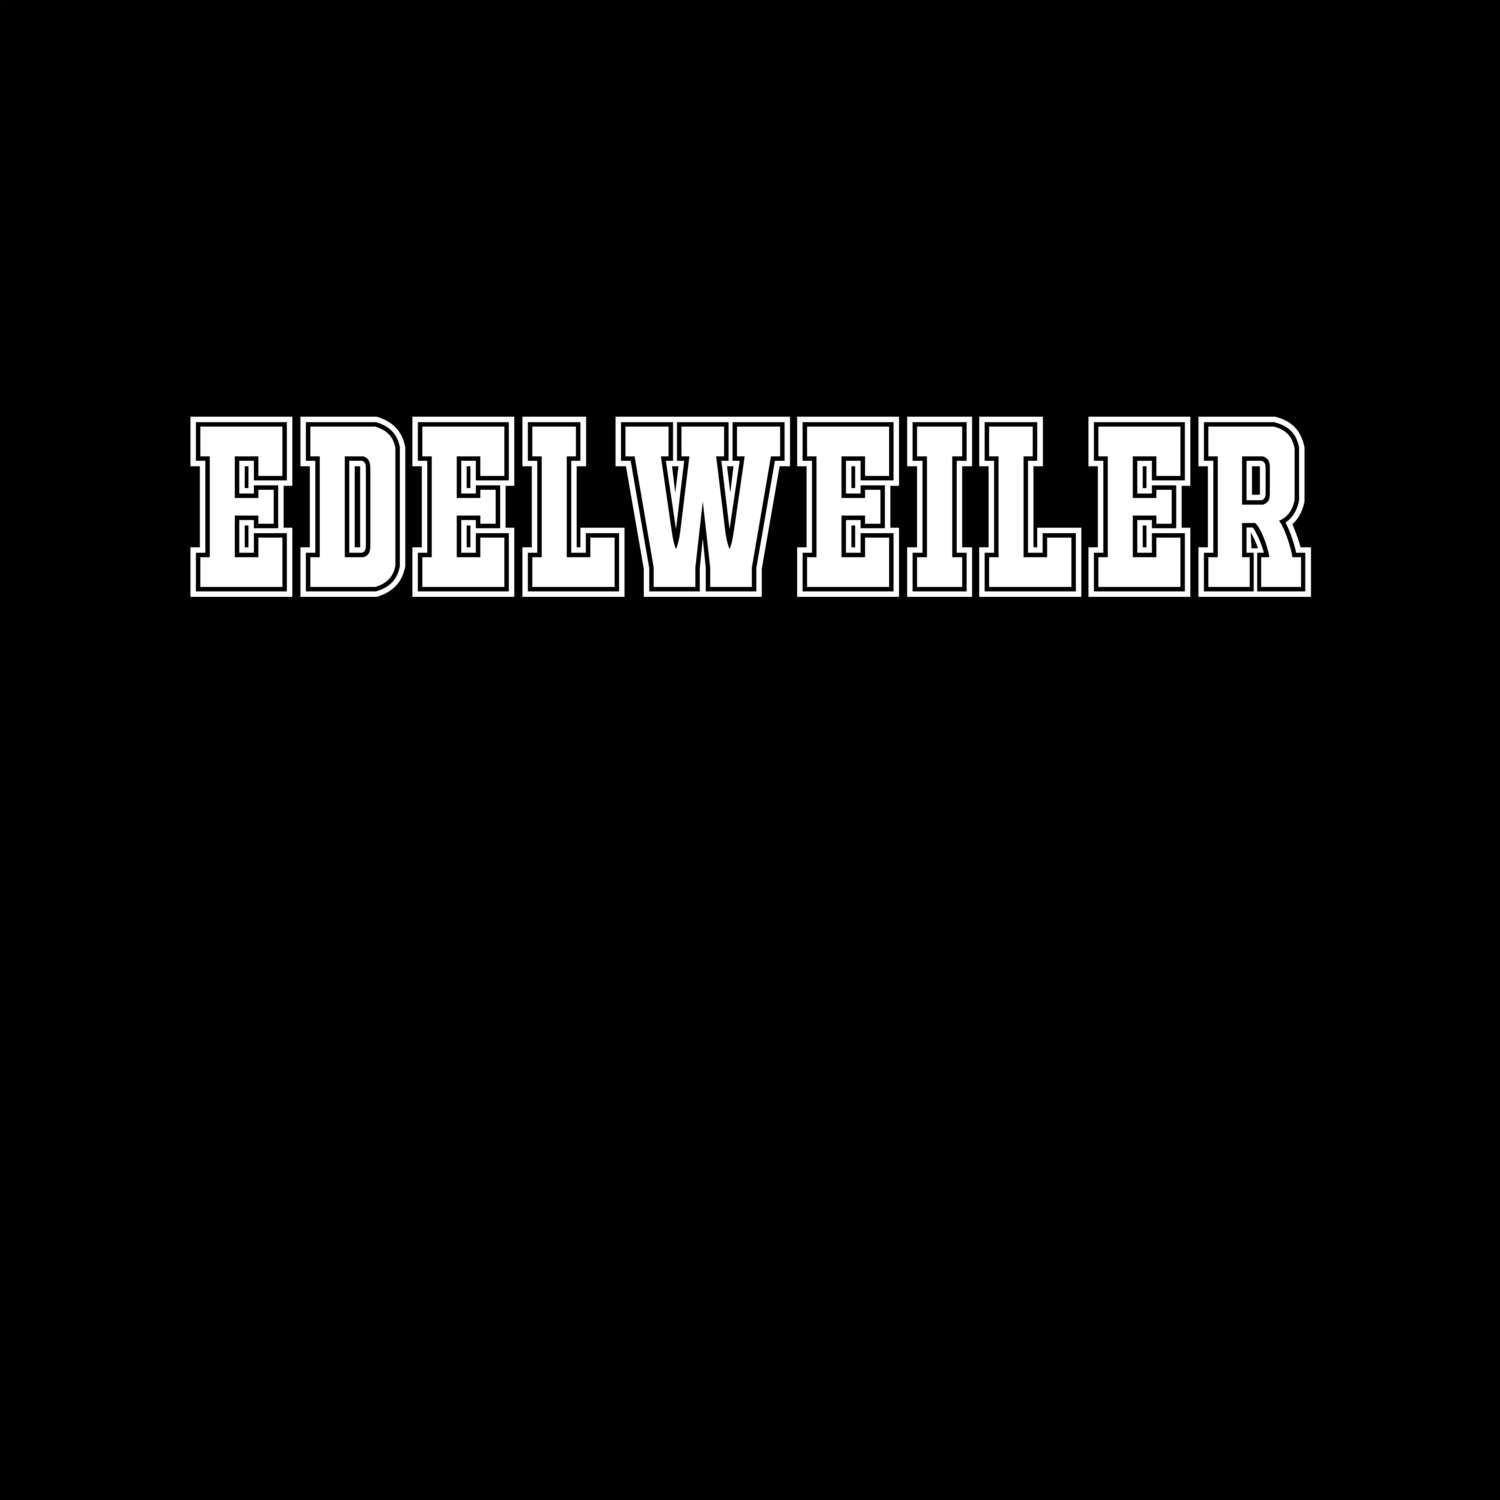 Edelweiler T-Shirt »Classic«